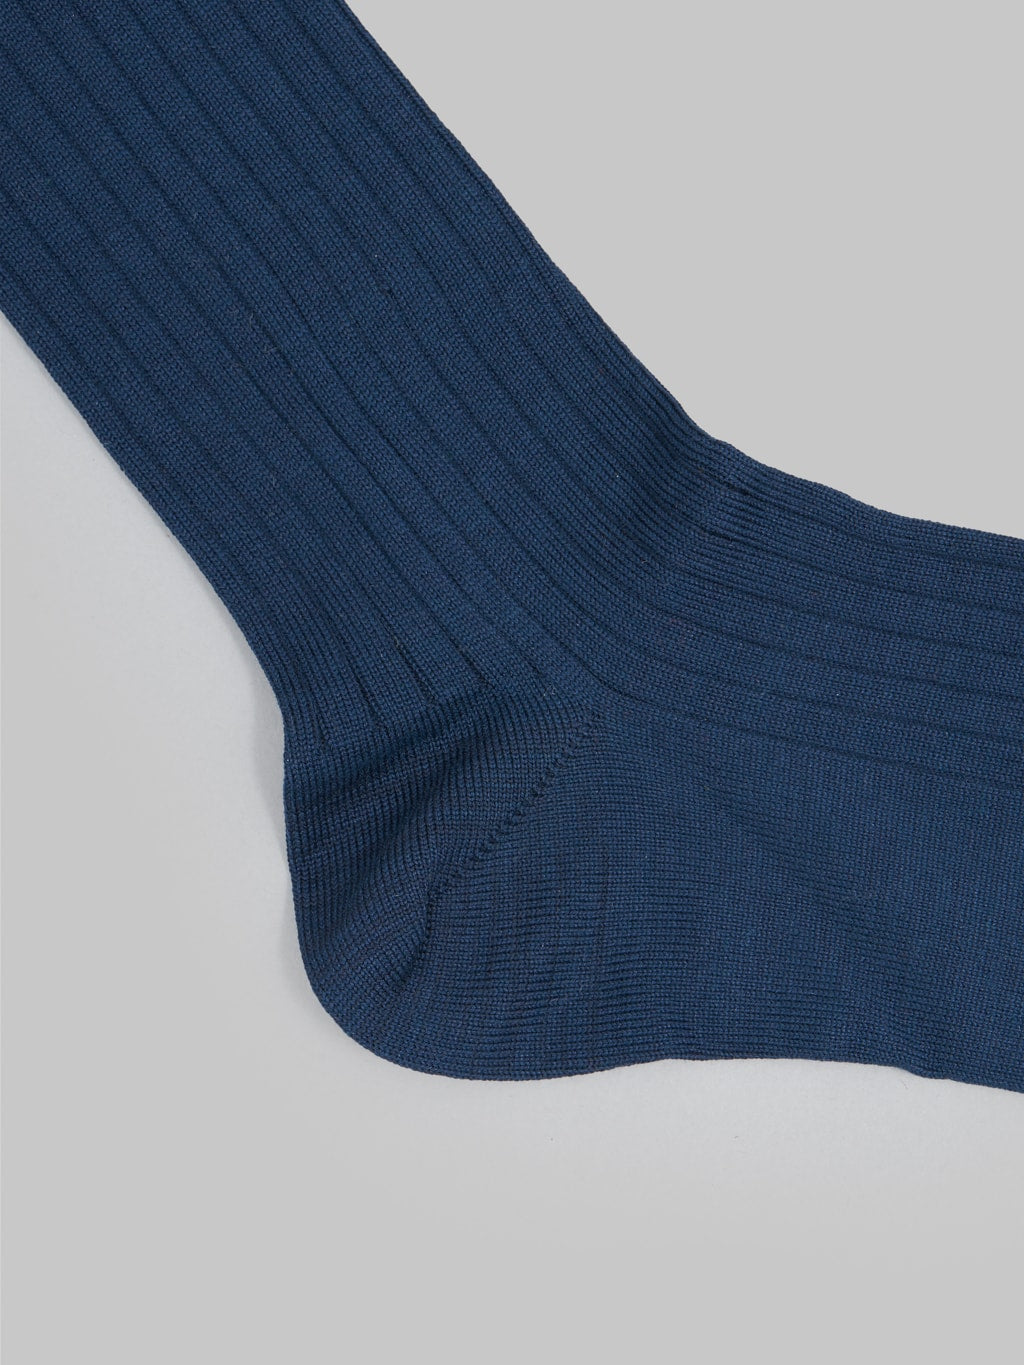 Nishiguchi Kutsushita Silk Cotton Ribbed Socks Navy